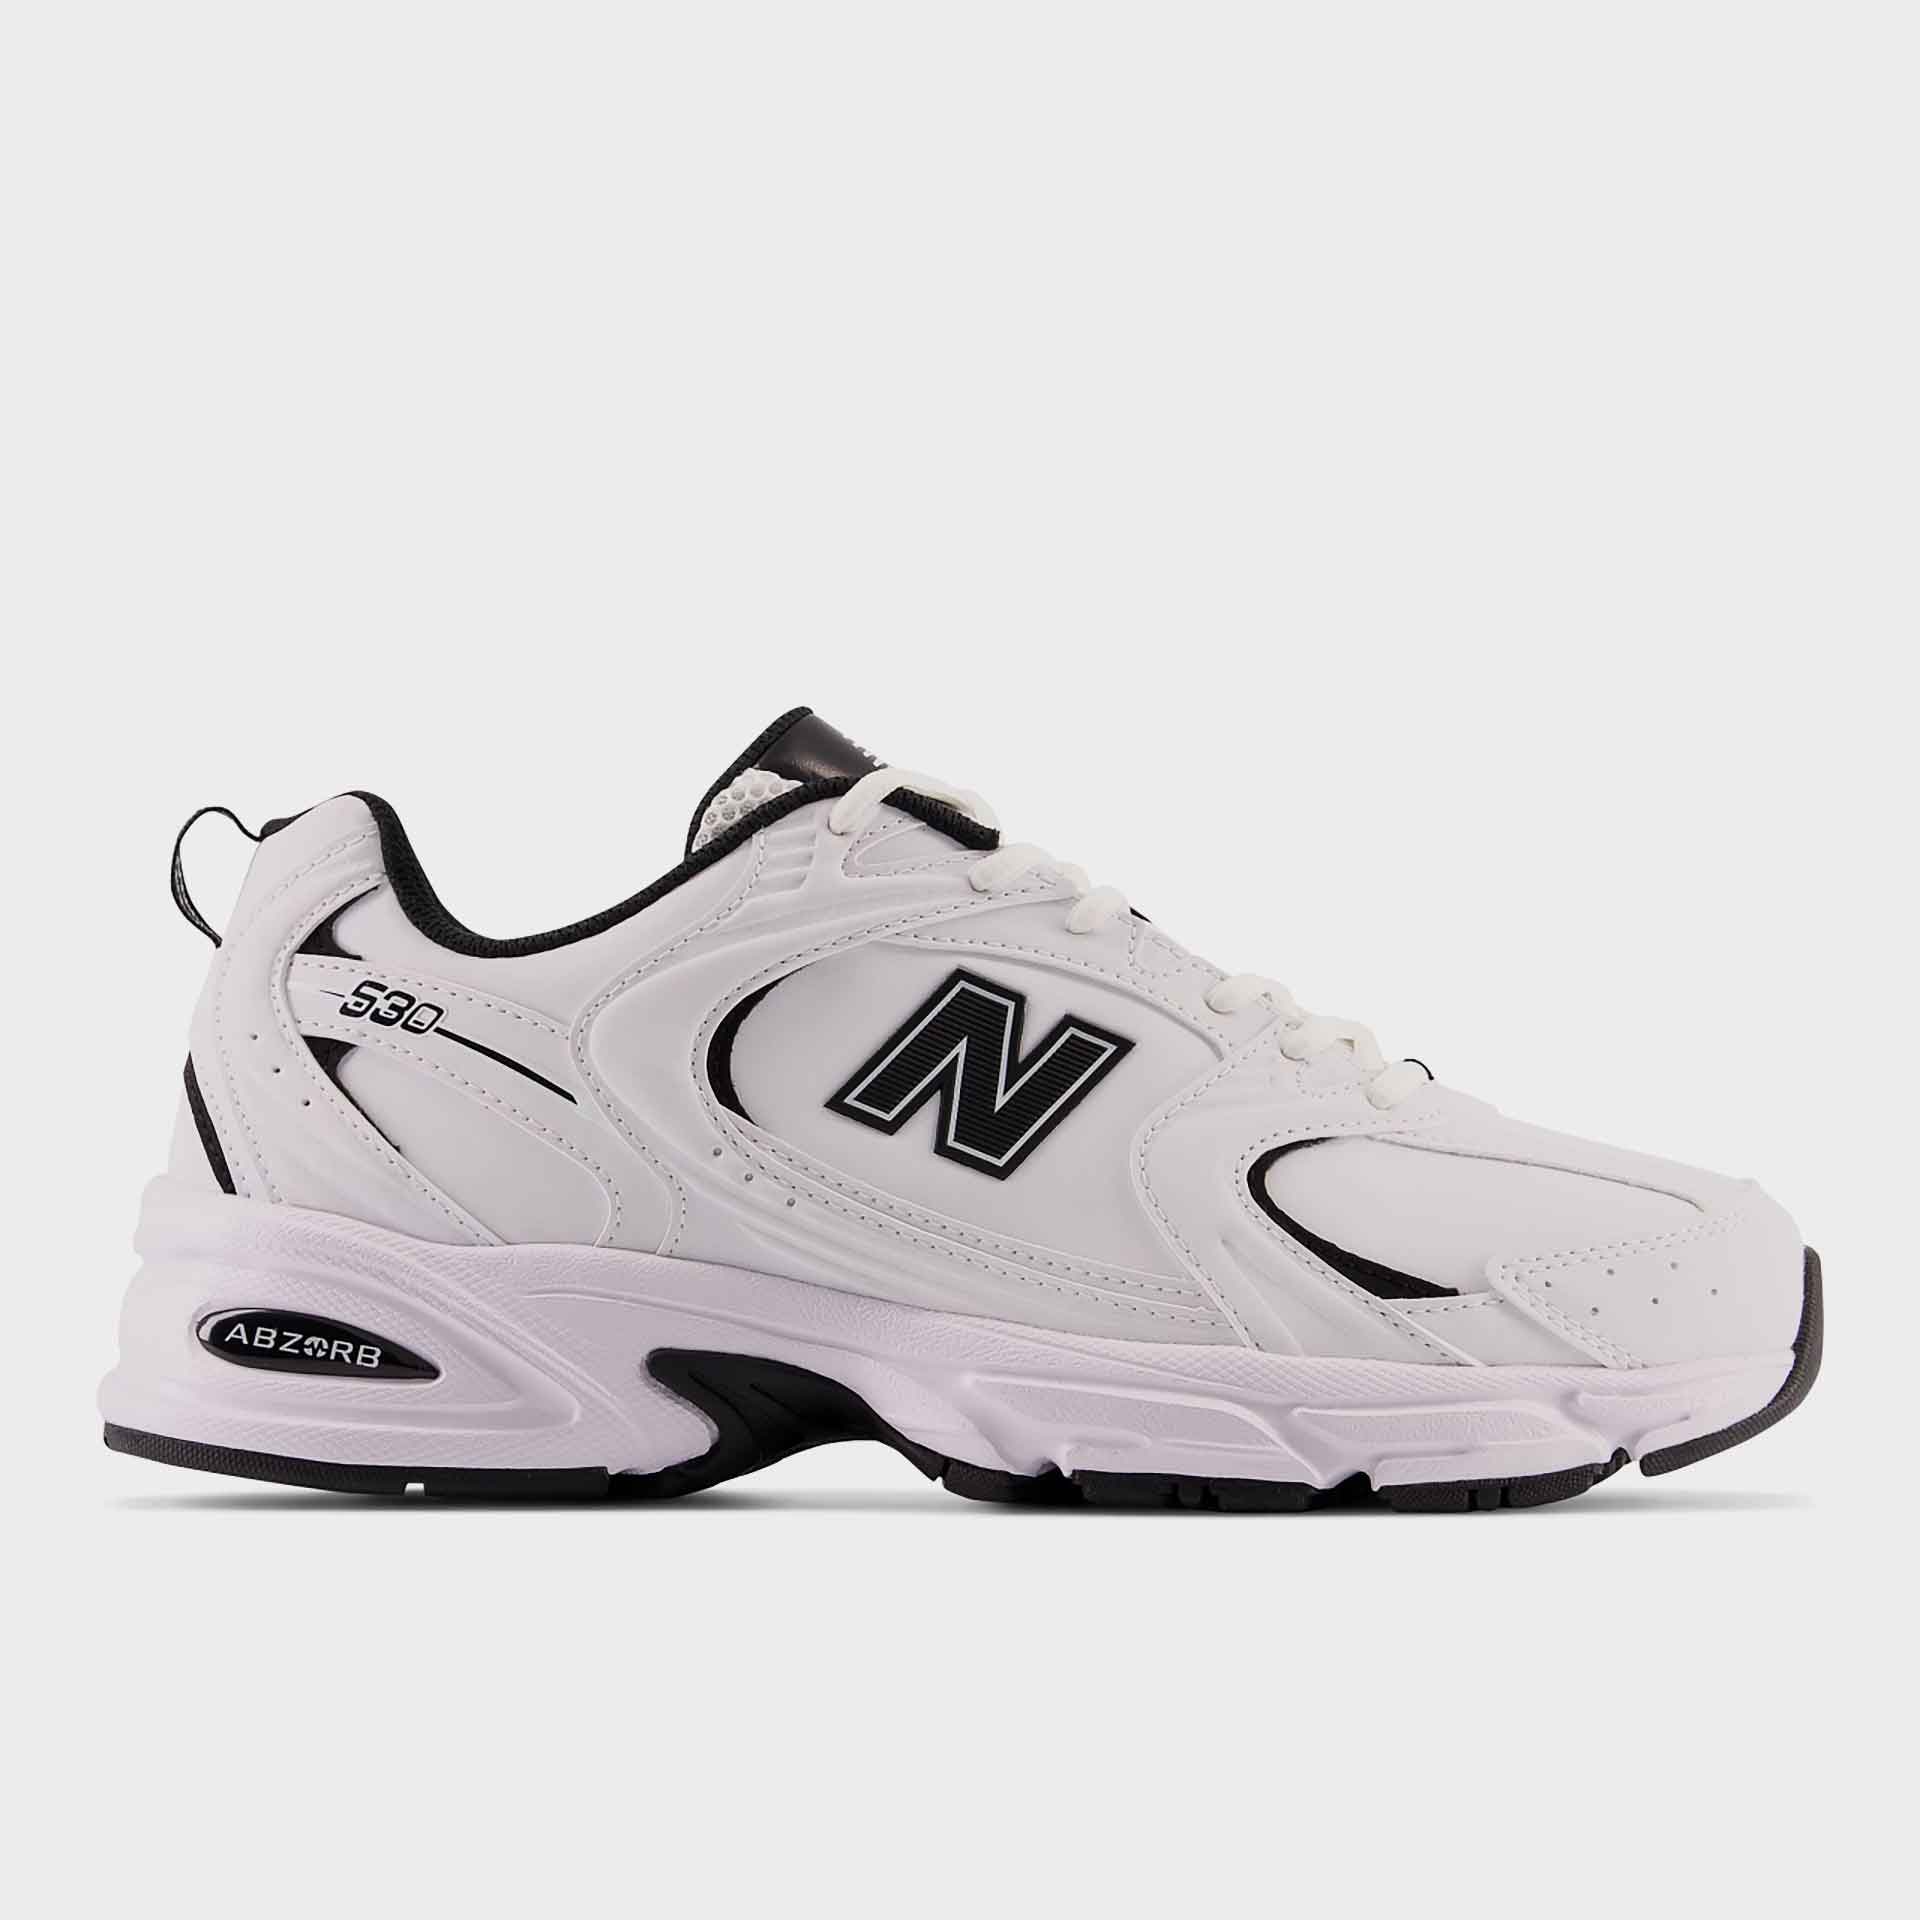 New Balance MR530SYB Sneaker White/Black